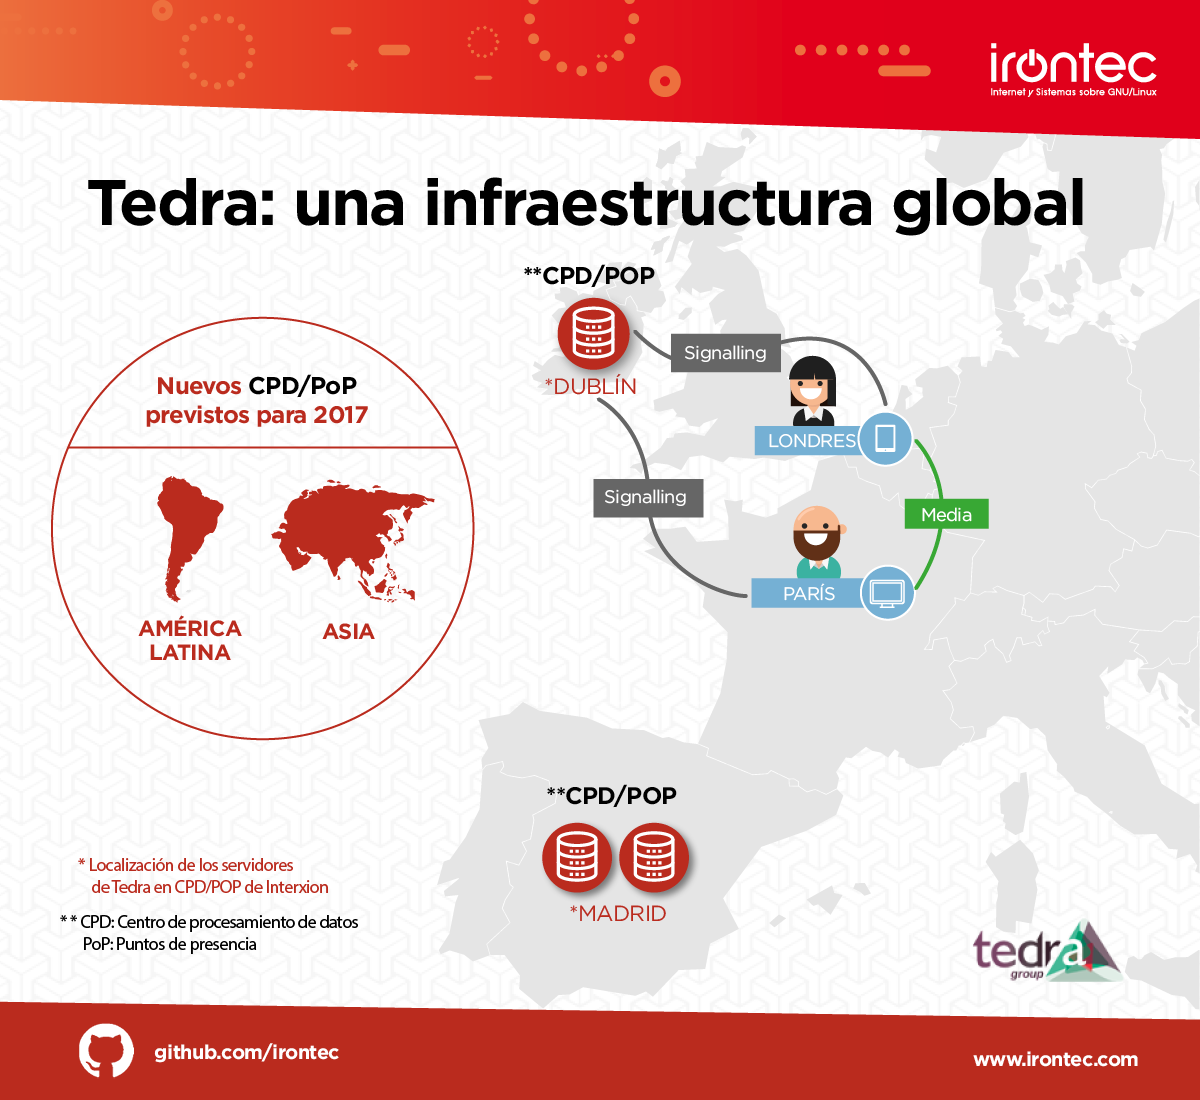 Tedra: una infraestructura global